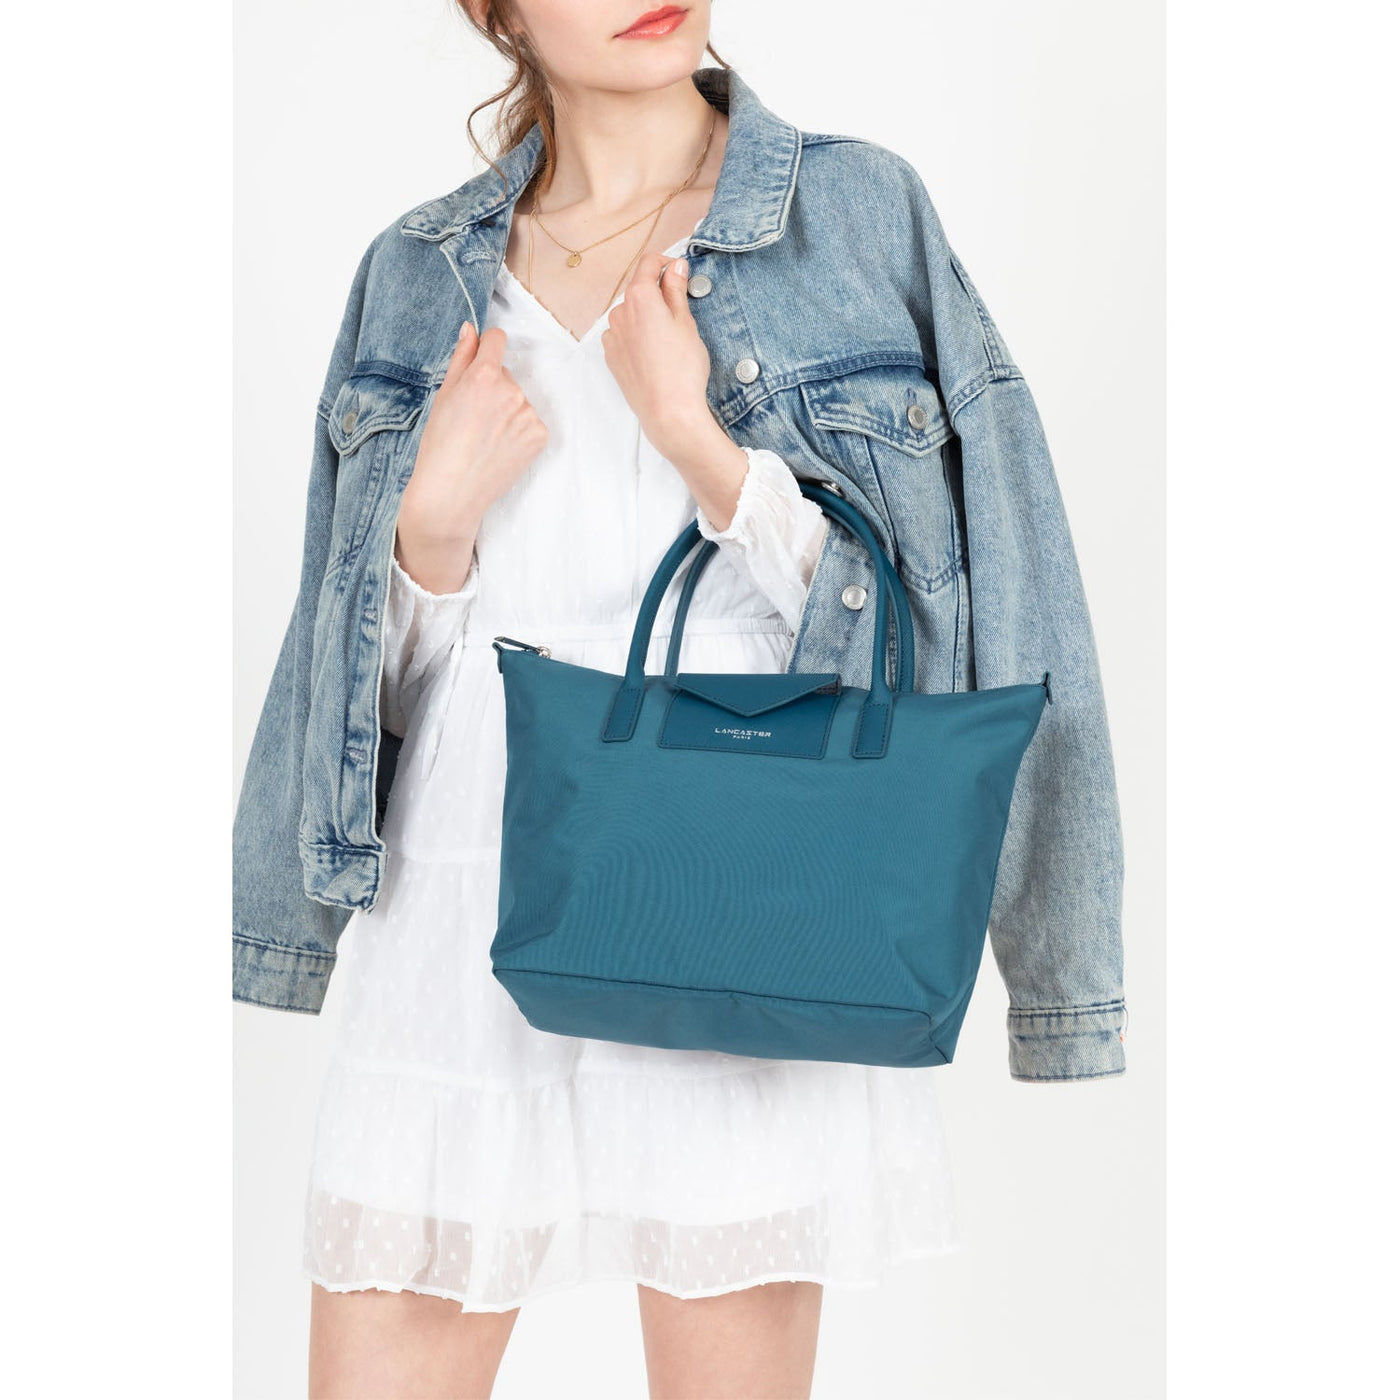 m tote bag - smart kba #couleur_bleu-paon